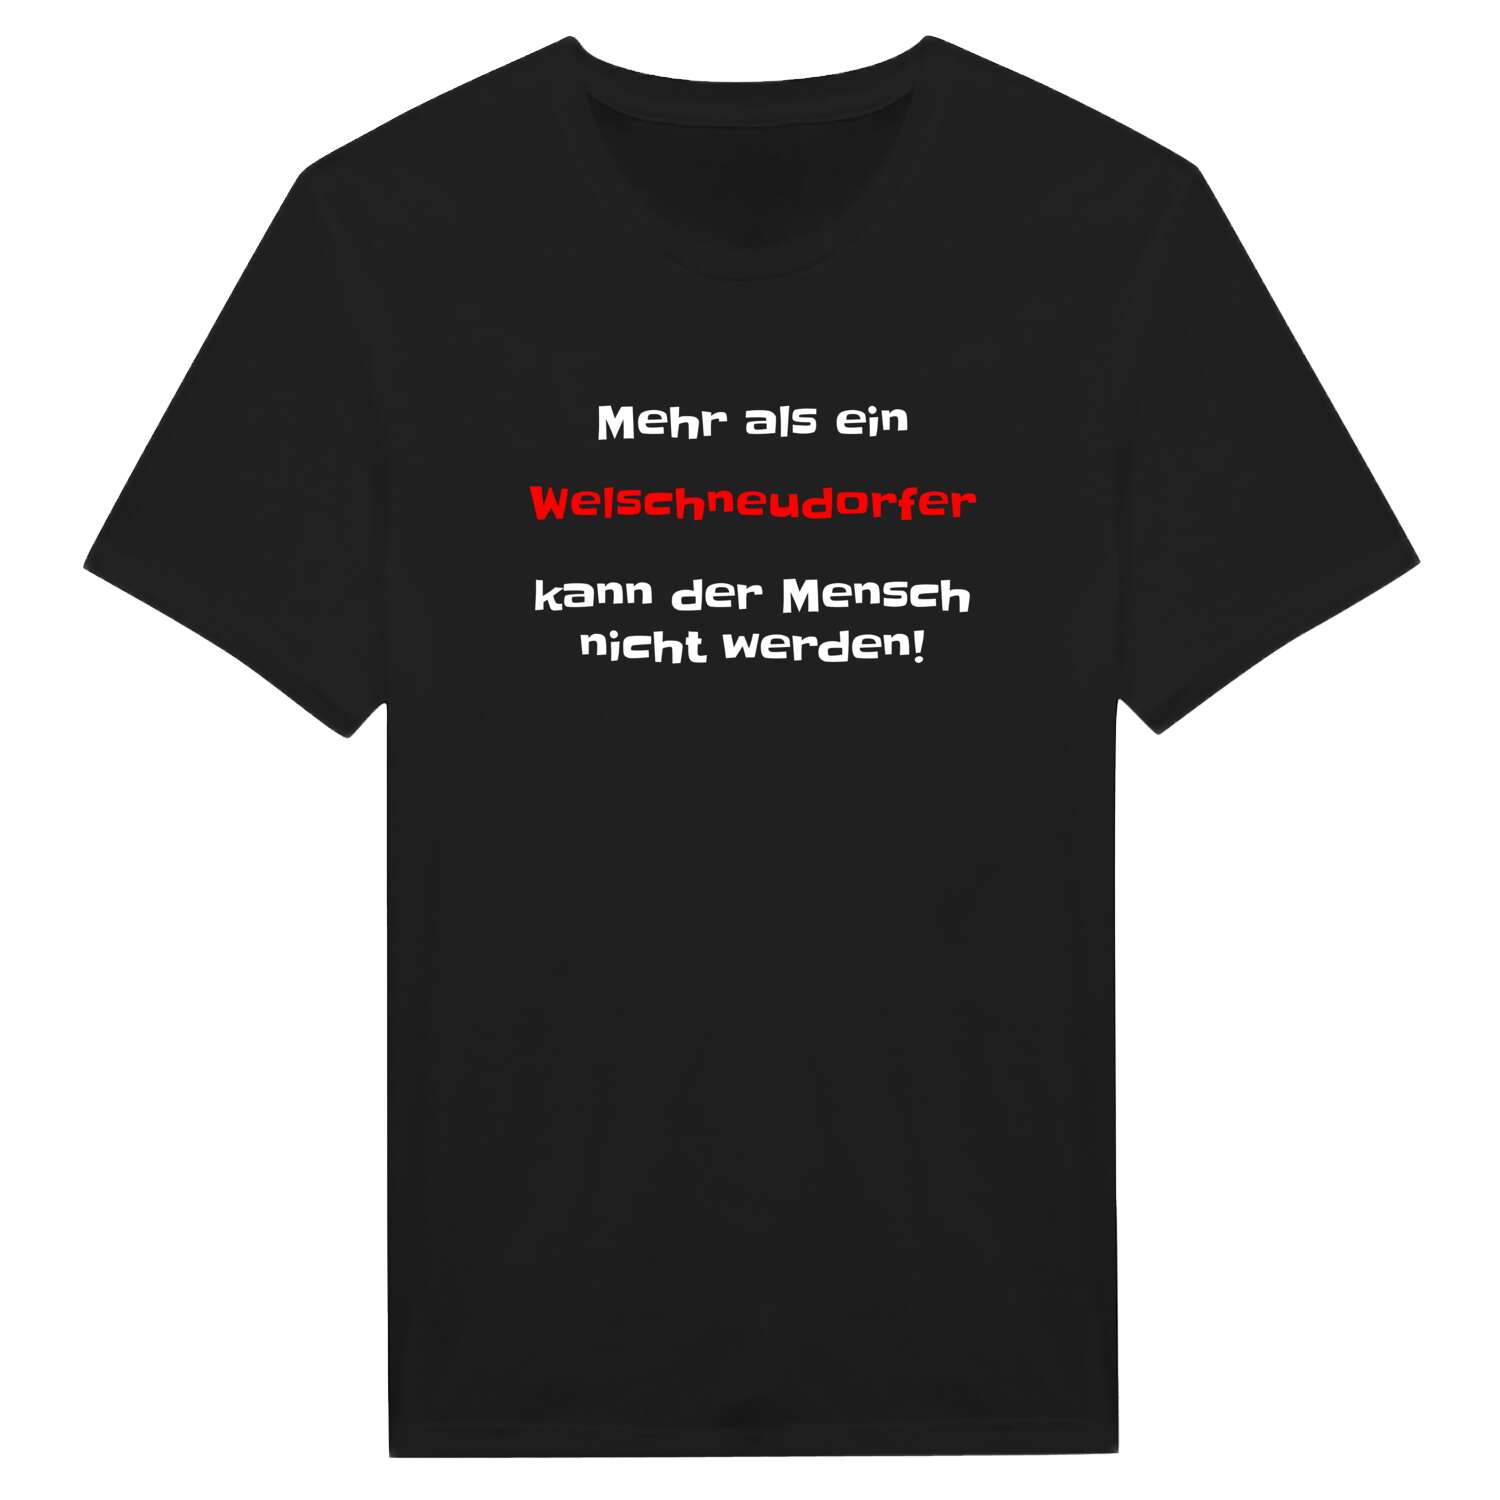 Welschneudorf T-Shirt »Mehr als ein«